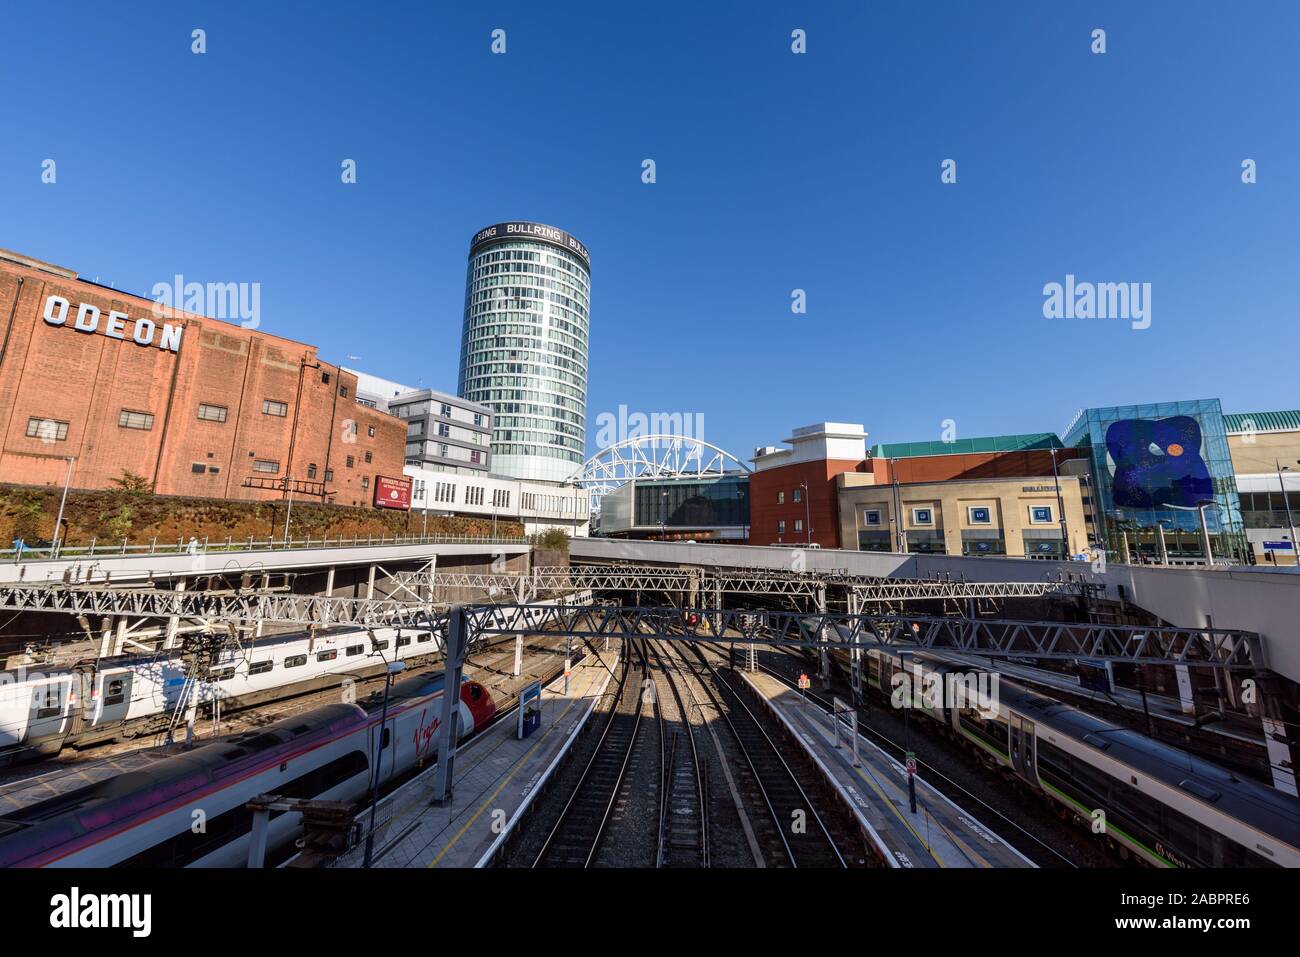 Bahnhof New Street, Birmingham, England - Feb 25,2018: Mit Blick auf die Strecken, die in Birmingham New Street Station in Richtung der Klasse 2 l führen. Stockfoto